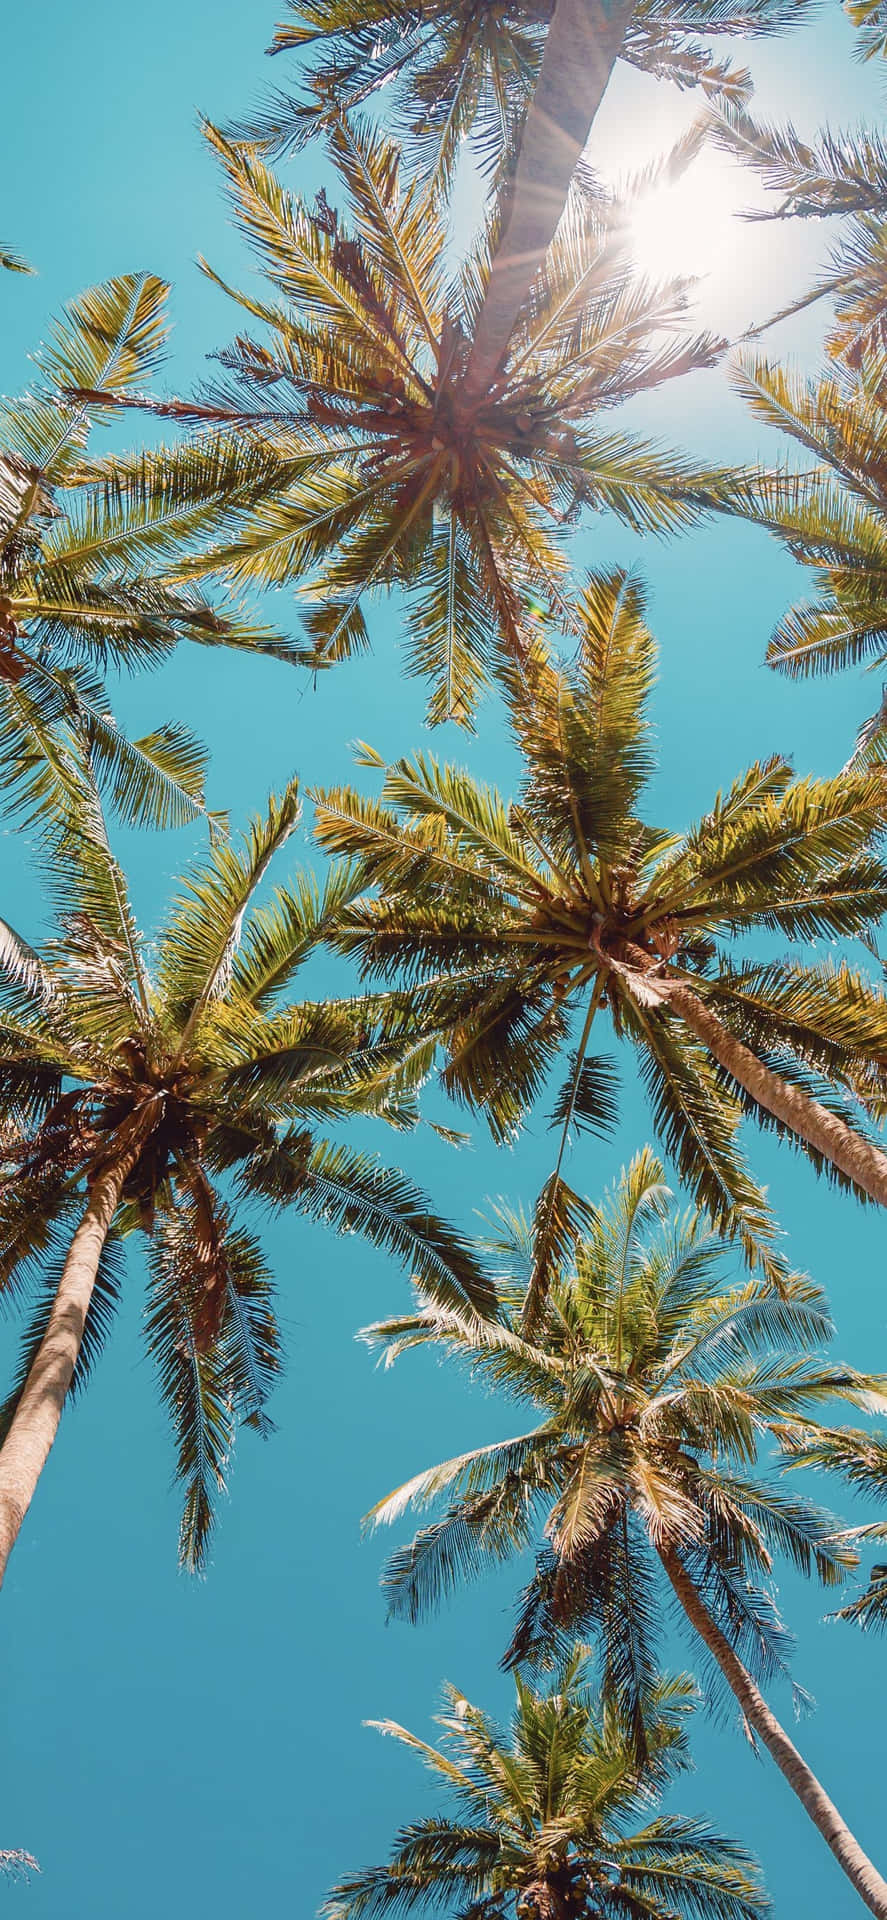 Palme træer i himlen med solen skinner gennem dem Wallpaper